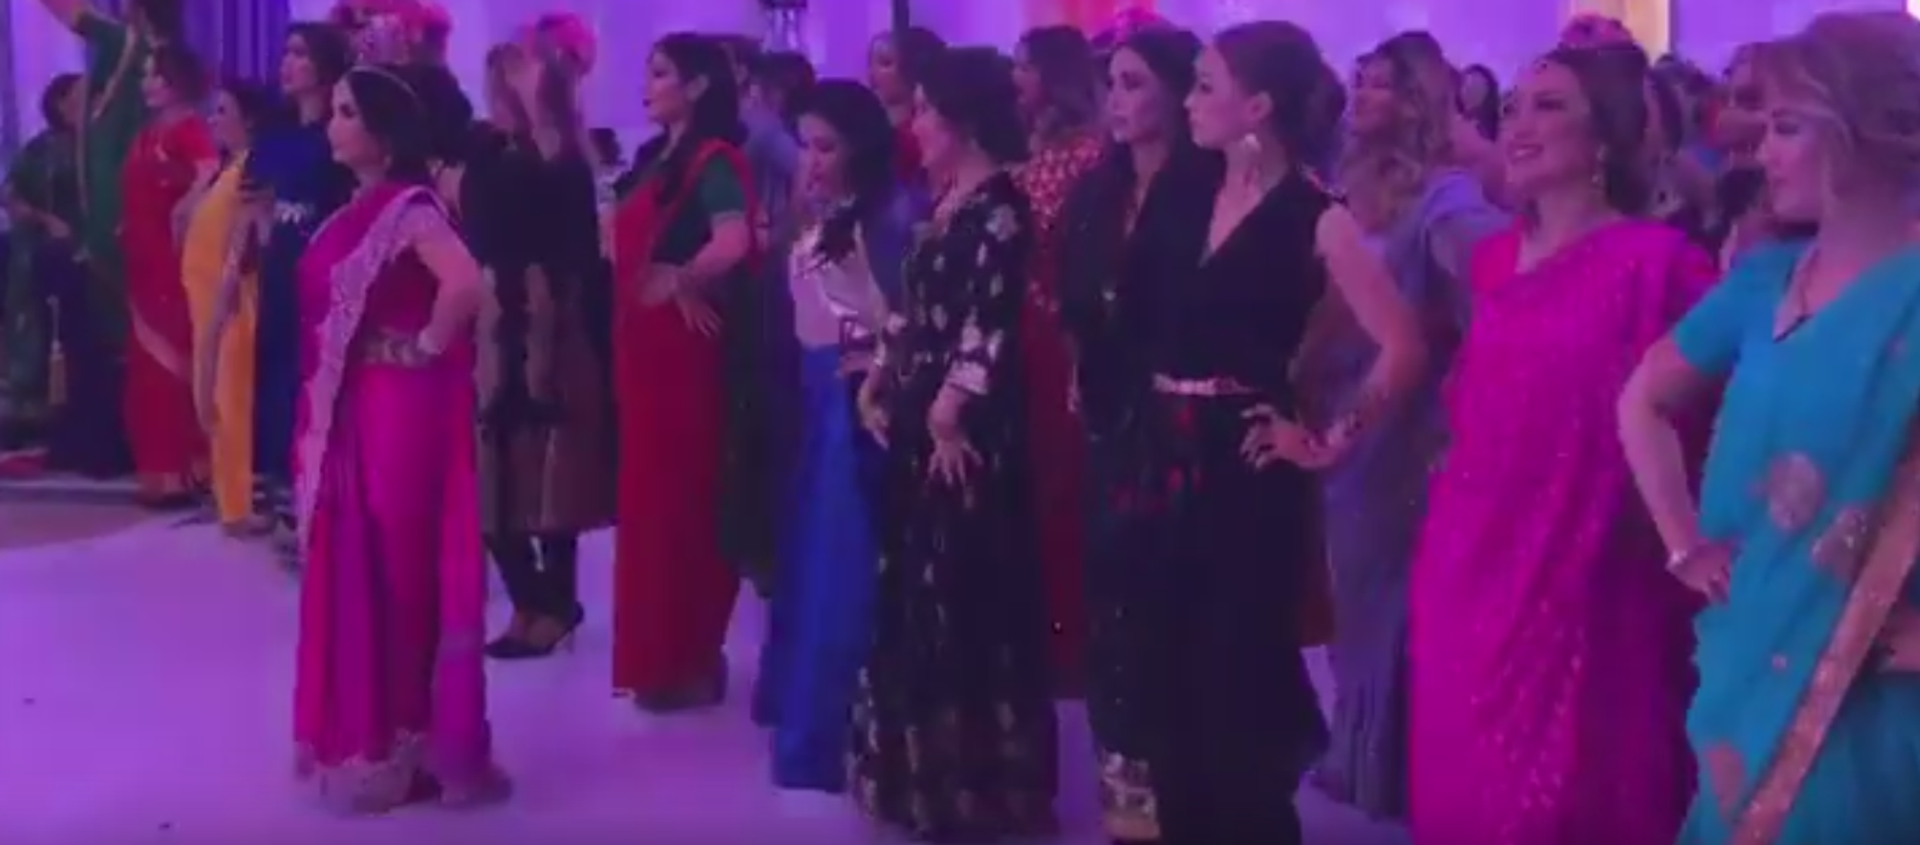 Грандиозная Bollywood party в Астане - видео - Sputnik Казахстан, 1920, 04.11.2018